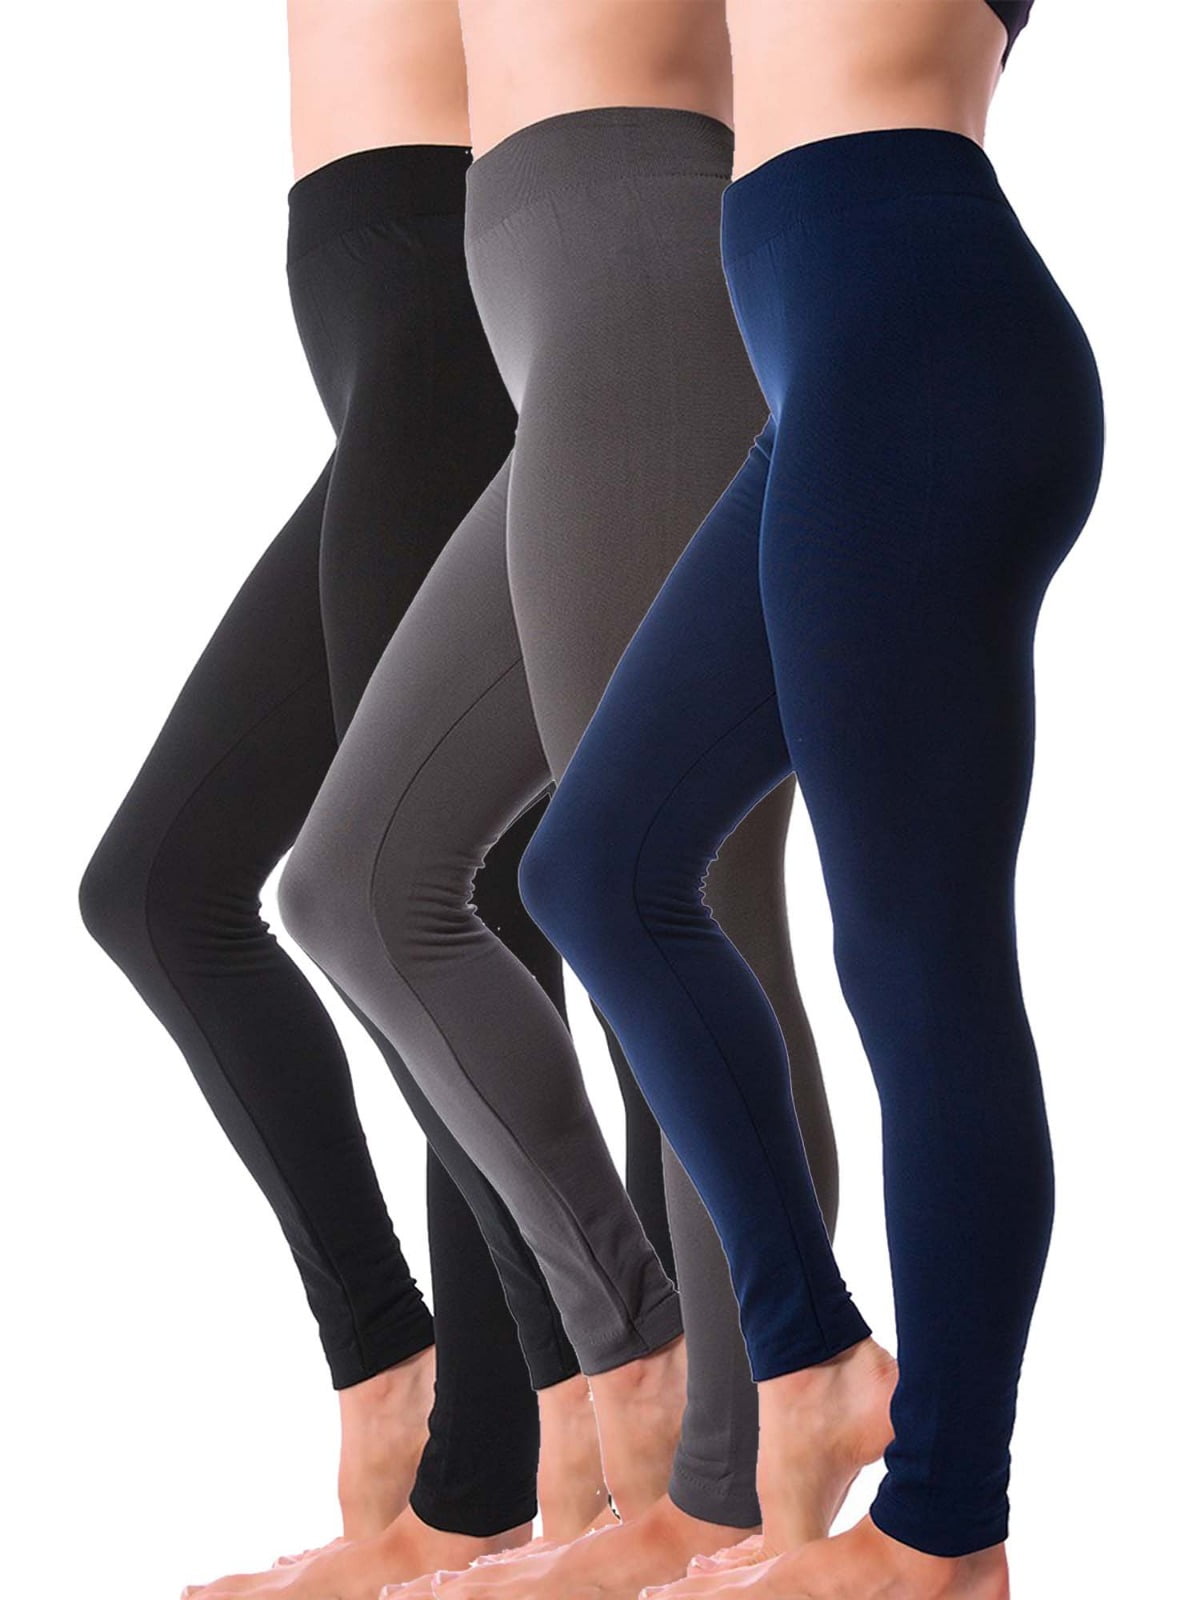 Winter Leggings for Women, Women's Full Length Fleece Lined Leggings, Footless  Thermal Warm Winter Tights Yoga Pants for Girls 